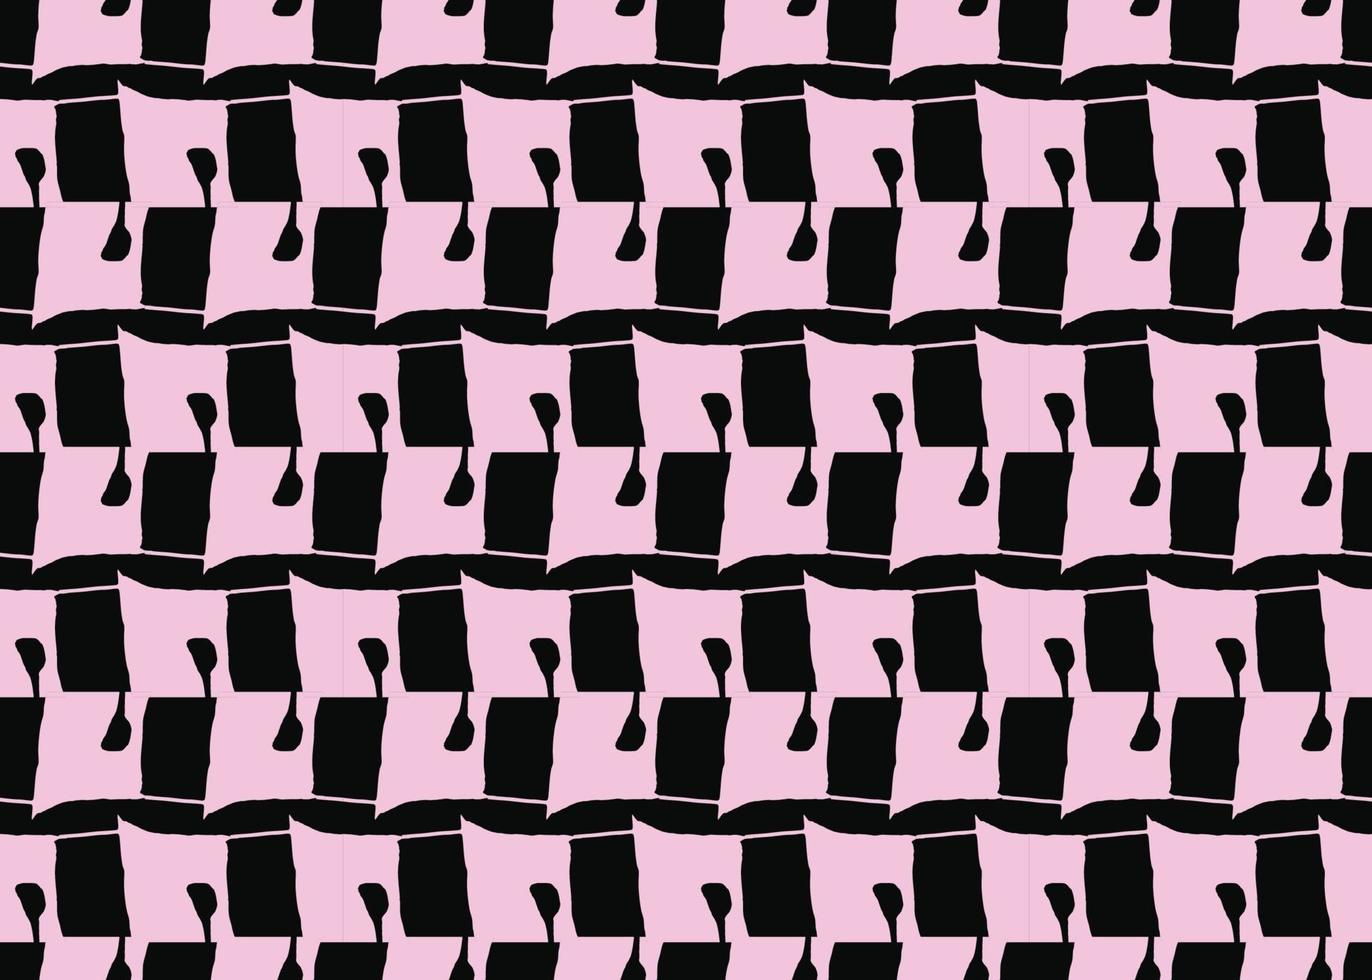 vector textuur achtergrond, naadloze patroon. hand getrokken, roze, zwarte kleuren.